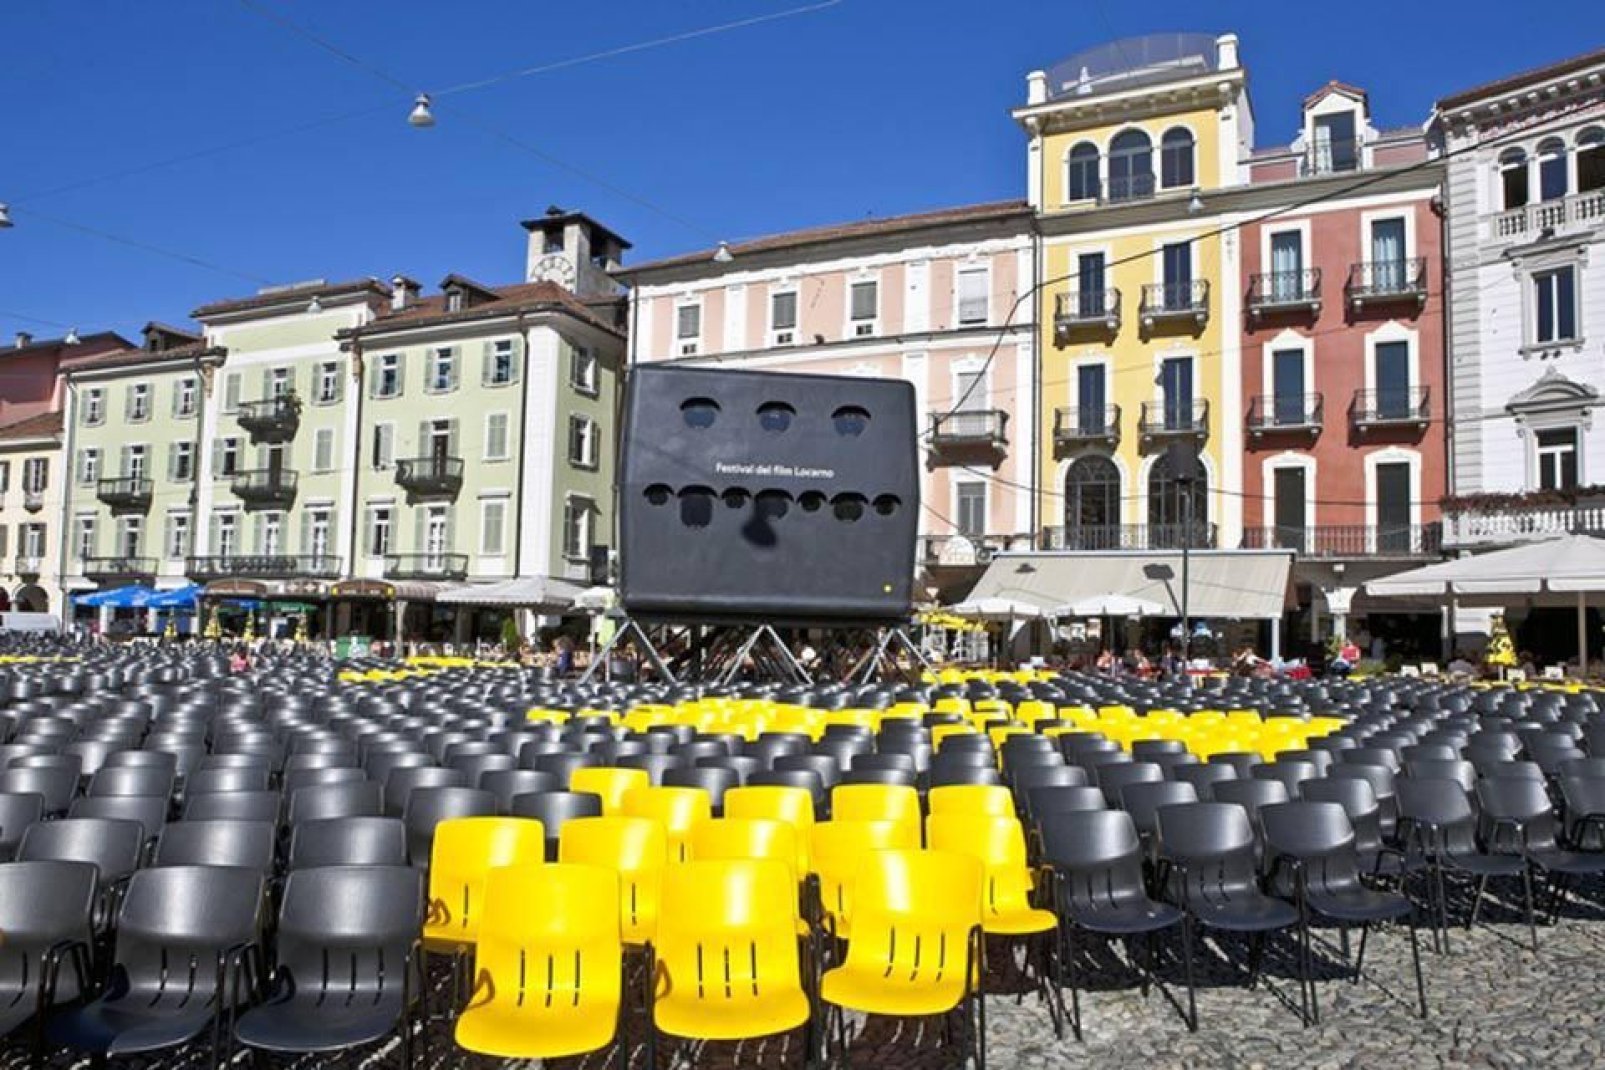 Todos los años, en pleno verano, Locarno acoge el Festival internacional de cine. Se proyectan películas al aire libre en la plaza central.